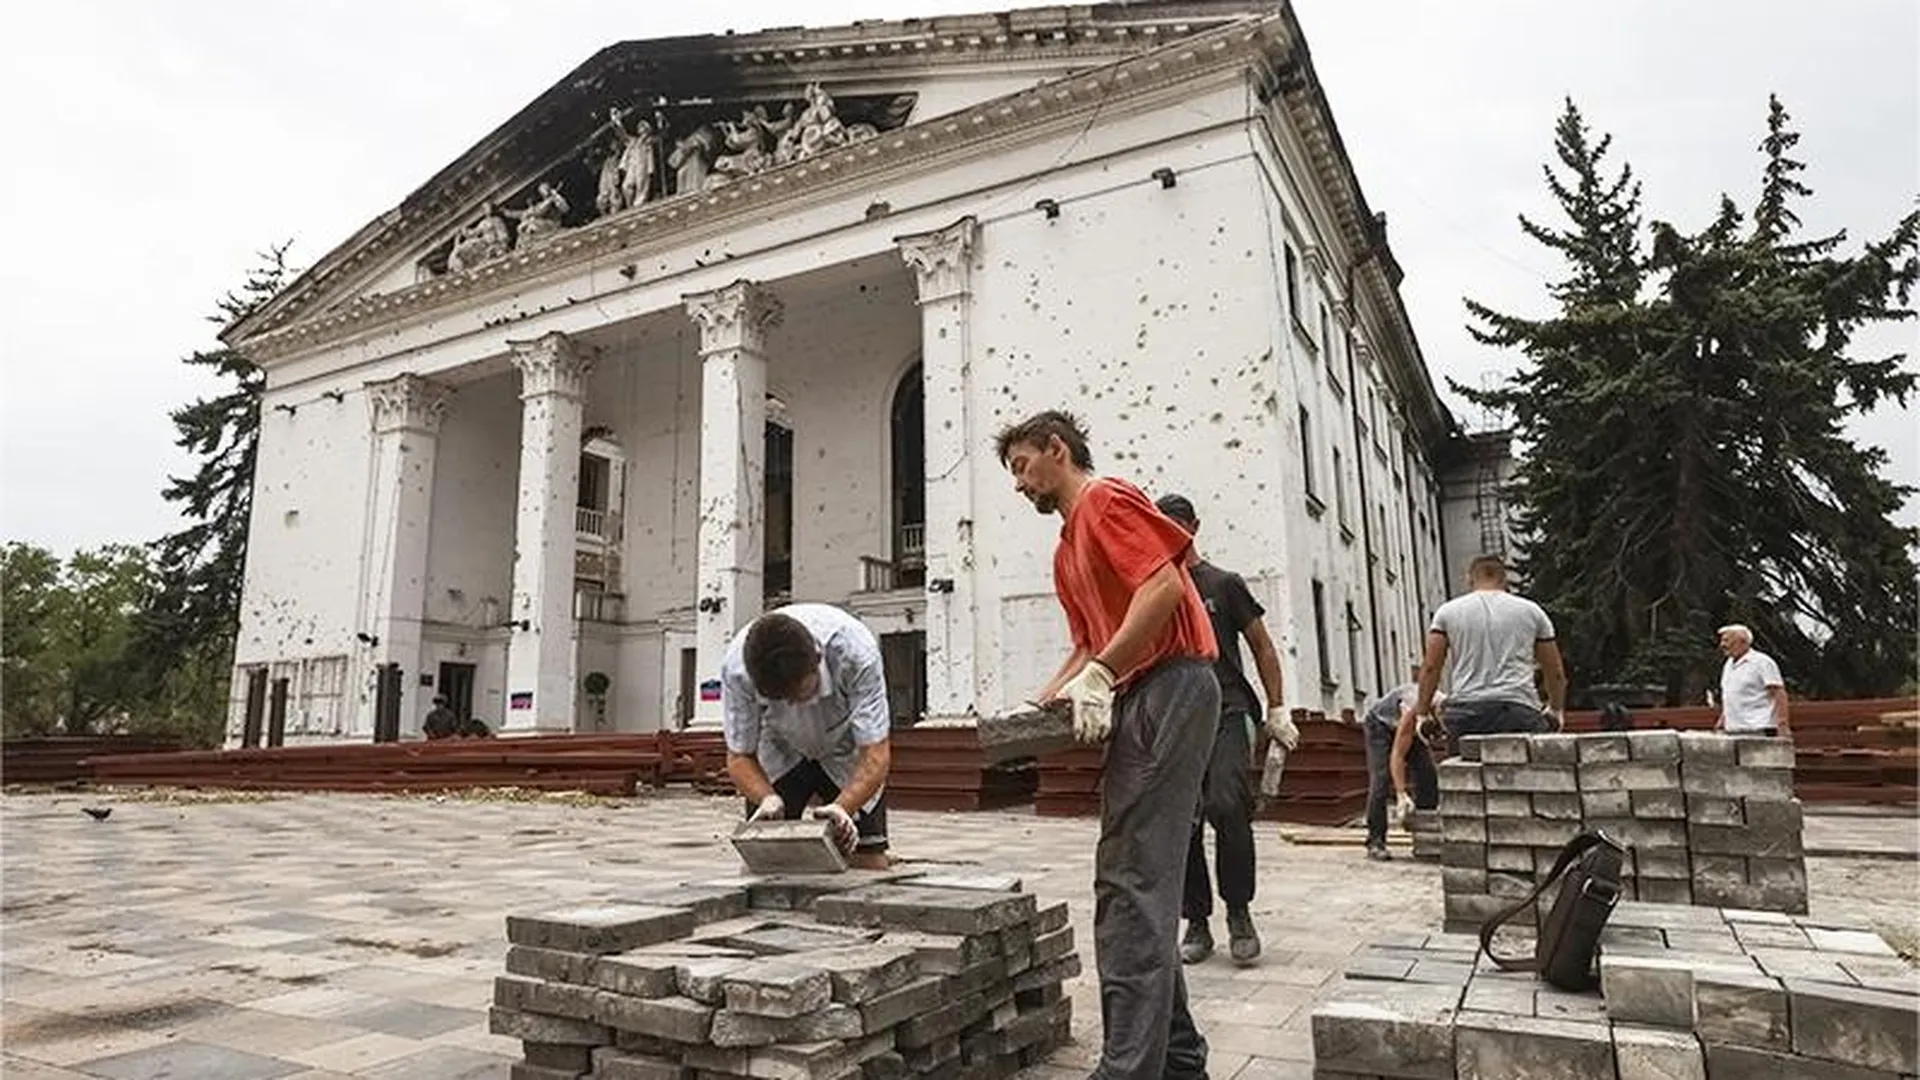 Играть спектакли под залпы артиллерии было не по себе: Мариупольский театр восстанавливают после взрыва